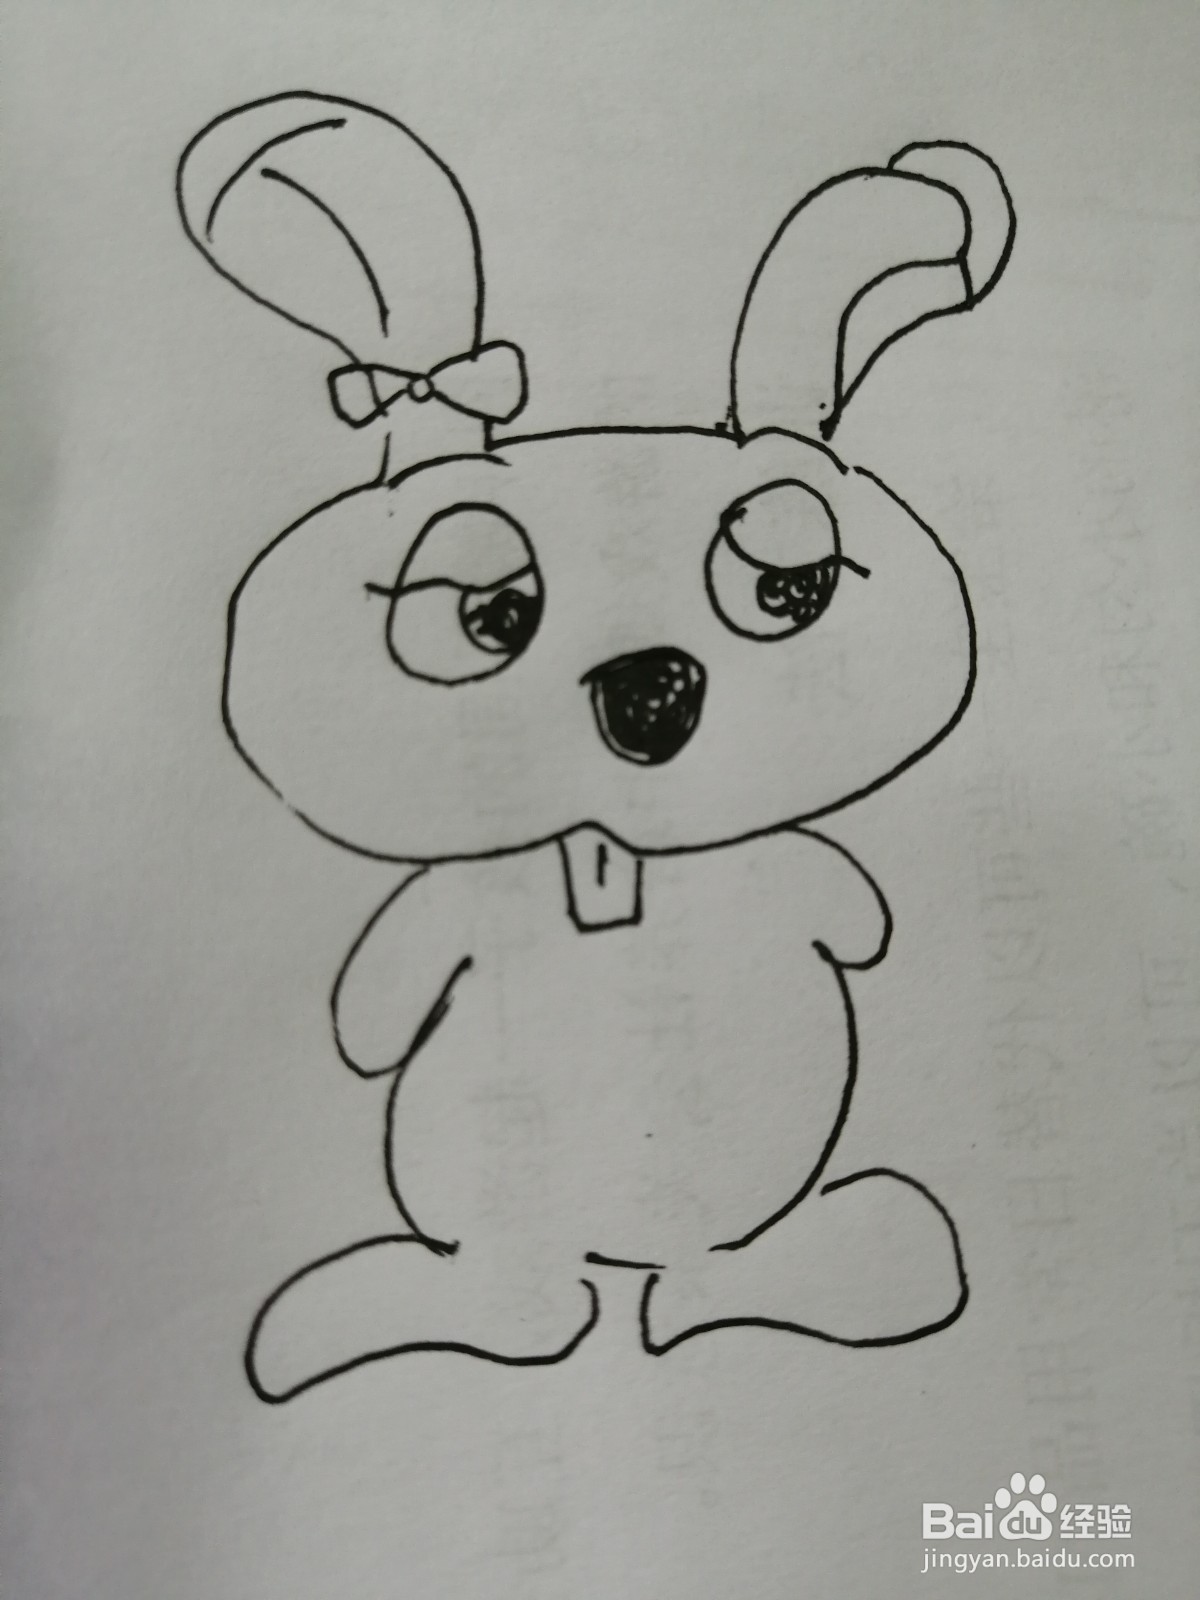 <b>可爱的长耳朵小兔子怎么画</b>